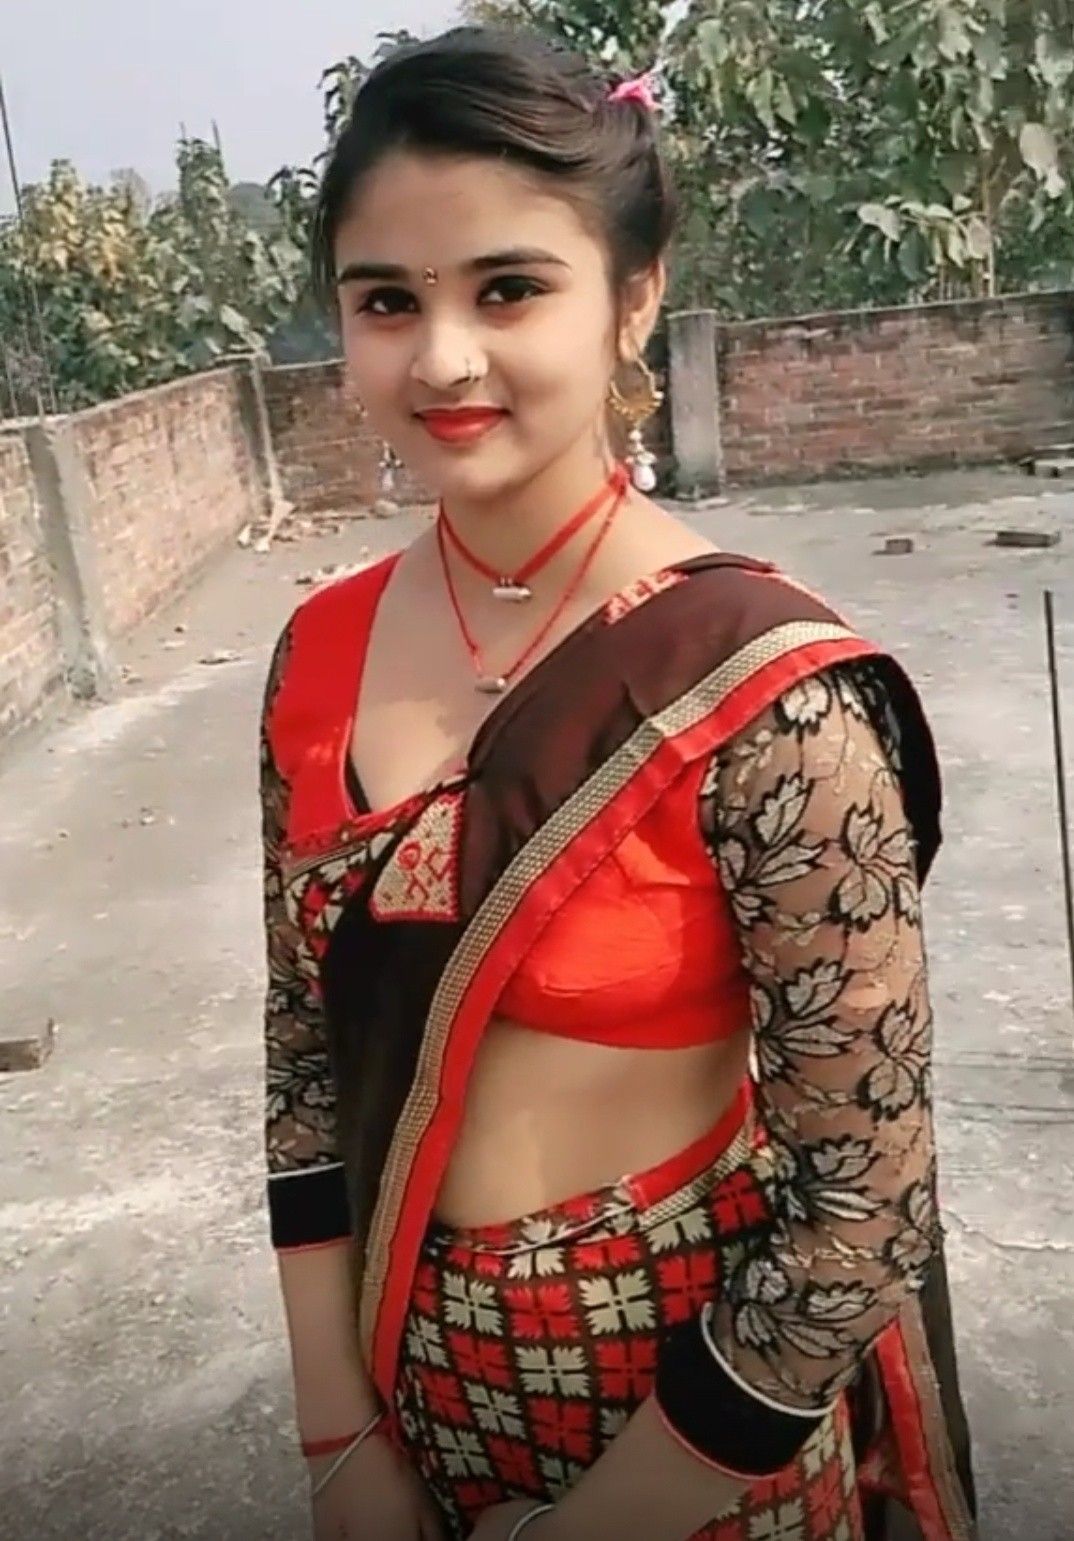 Hot indian teen girls